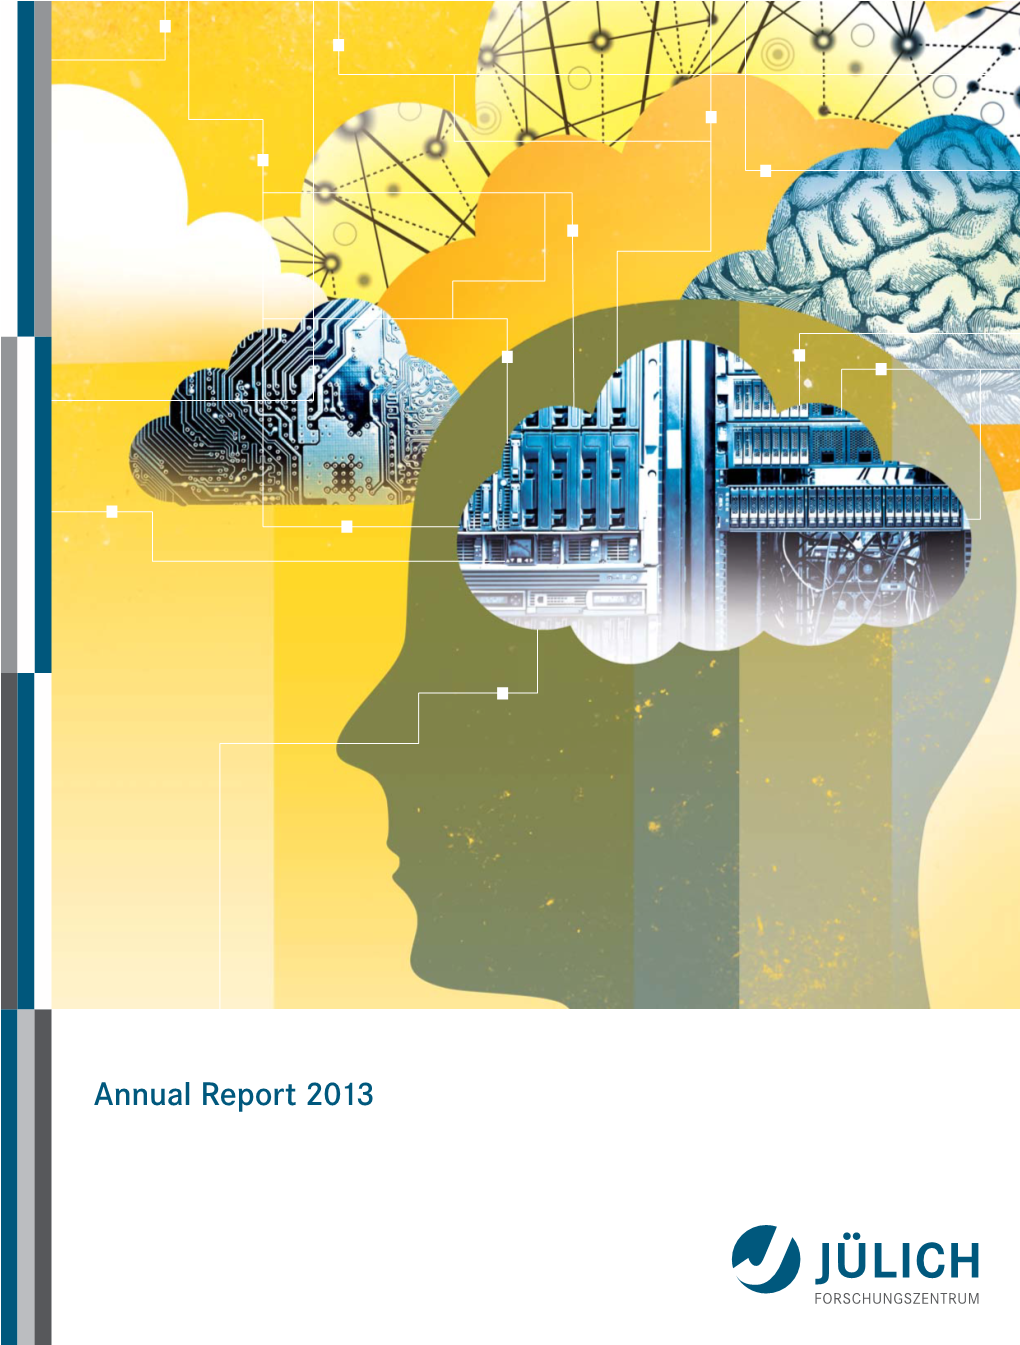 Annual Report 2013 Das Forschungszentrum Jülich Auf Einen Blick